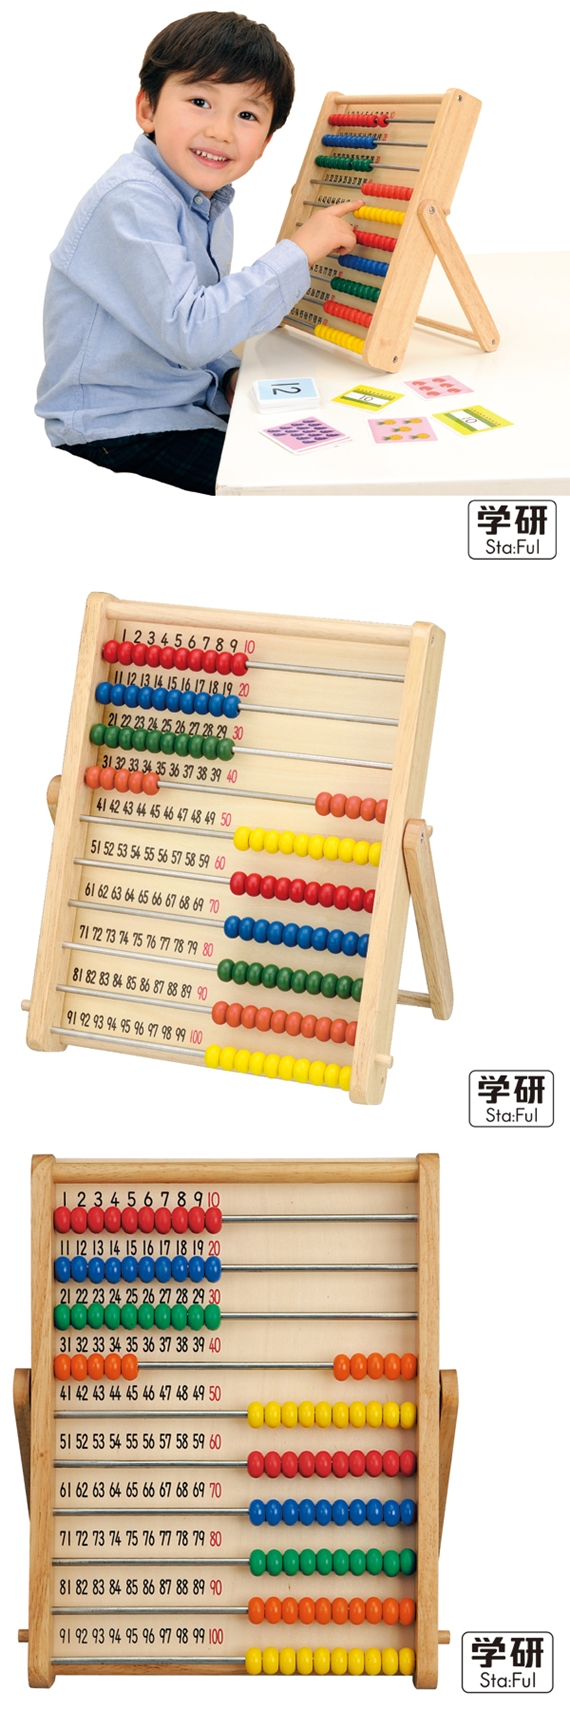 Gakken-日本學研木製100珠學習算盤(GK83406)